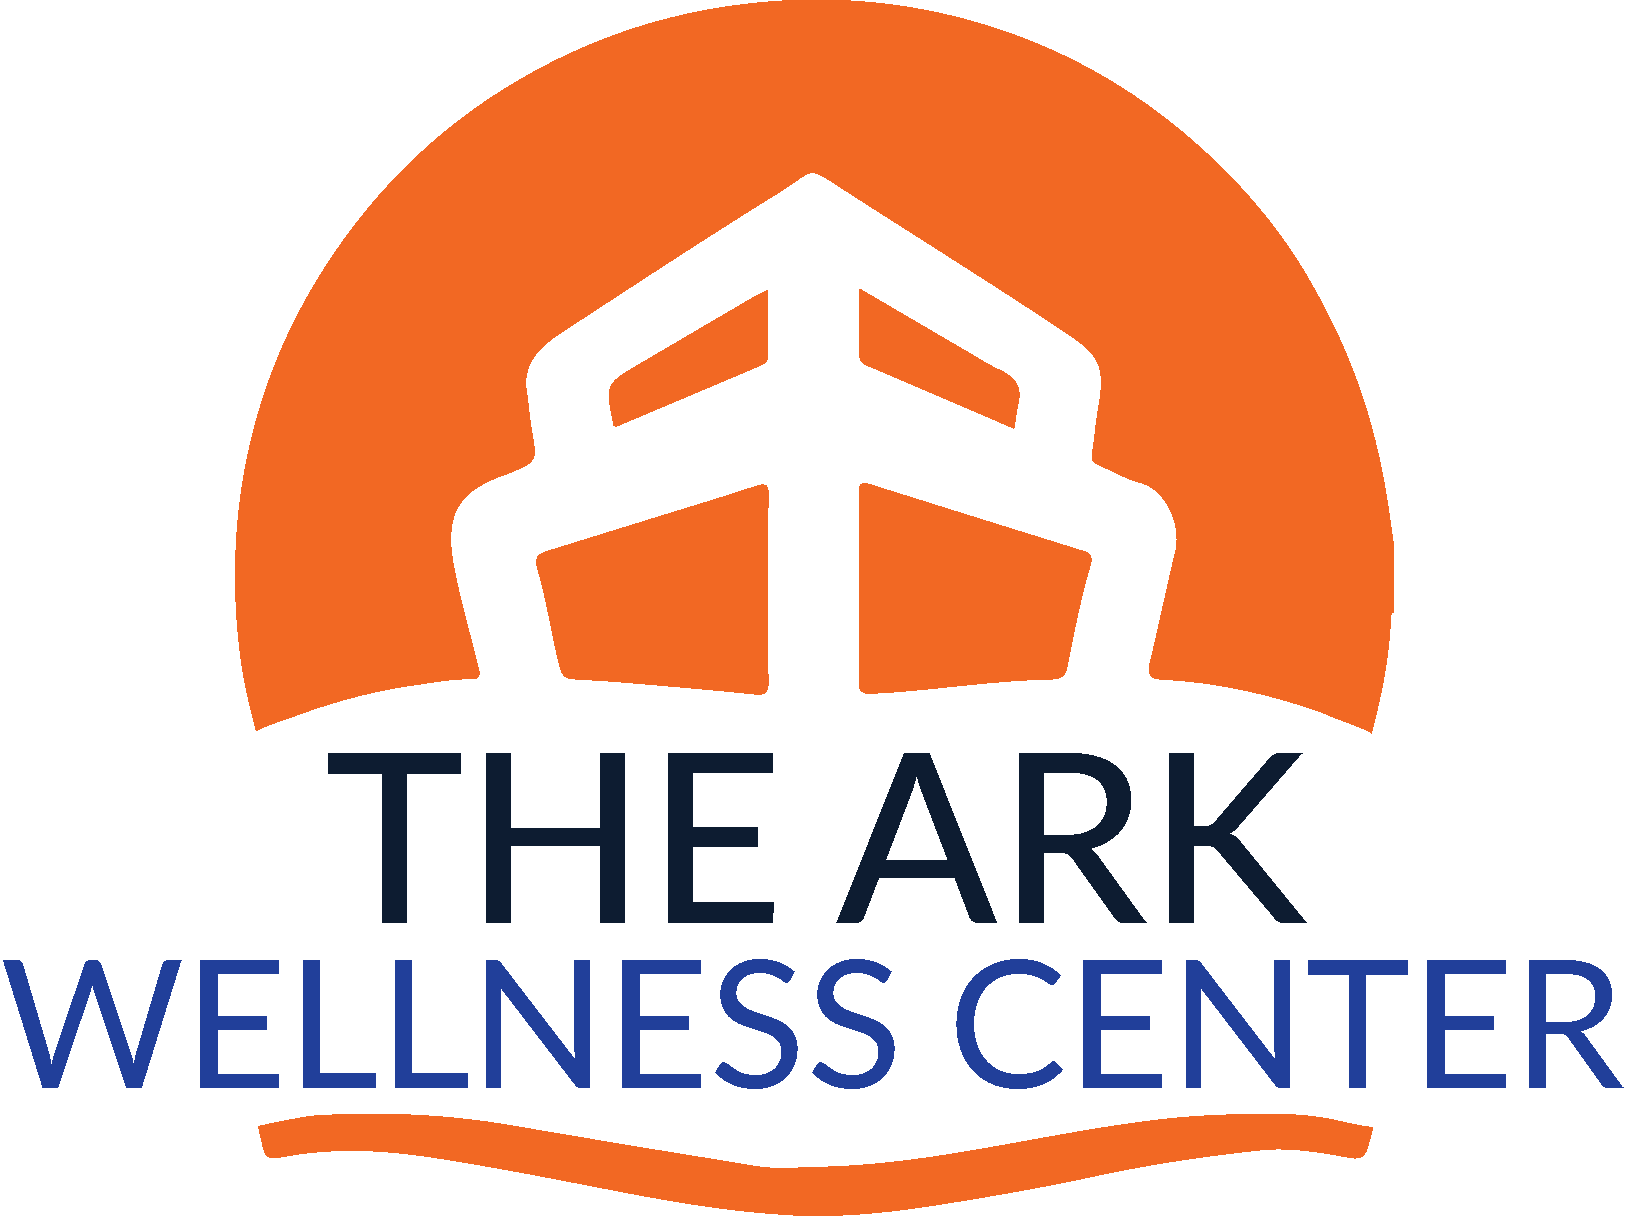 The Ark Wellness Center